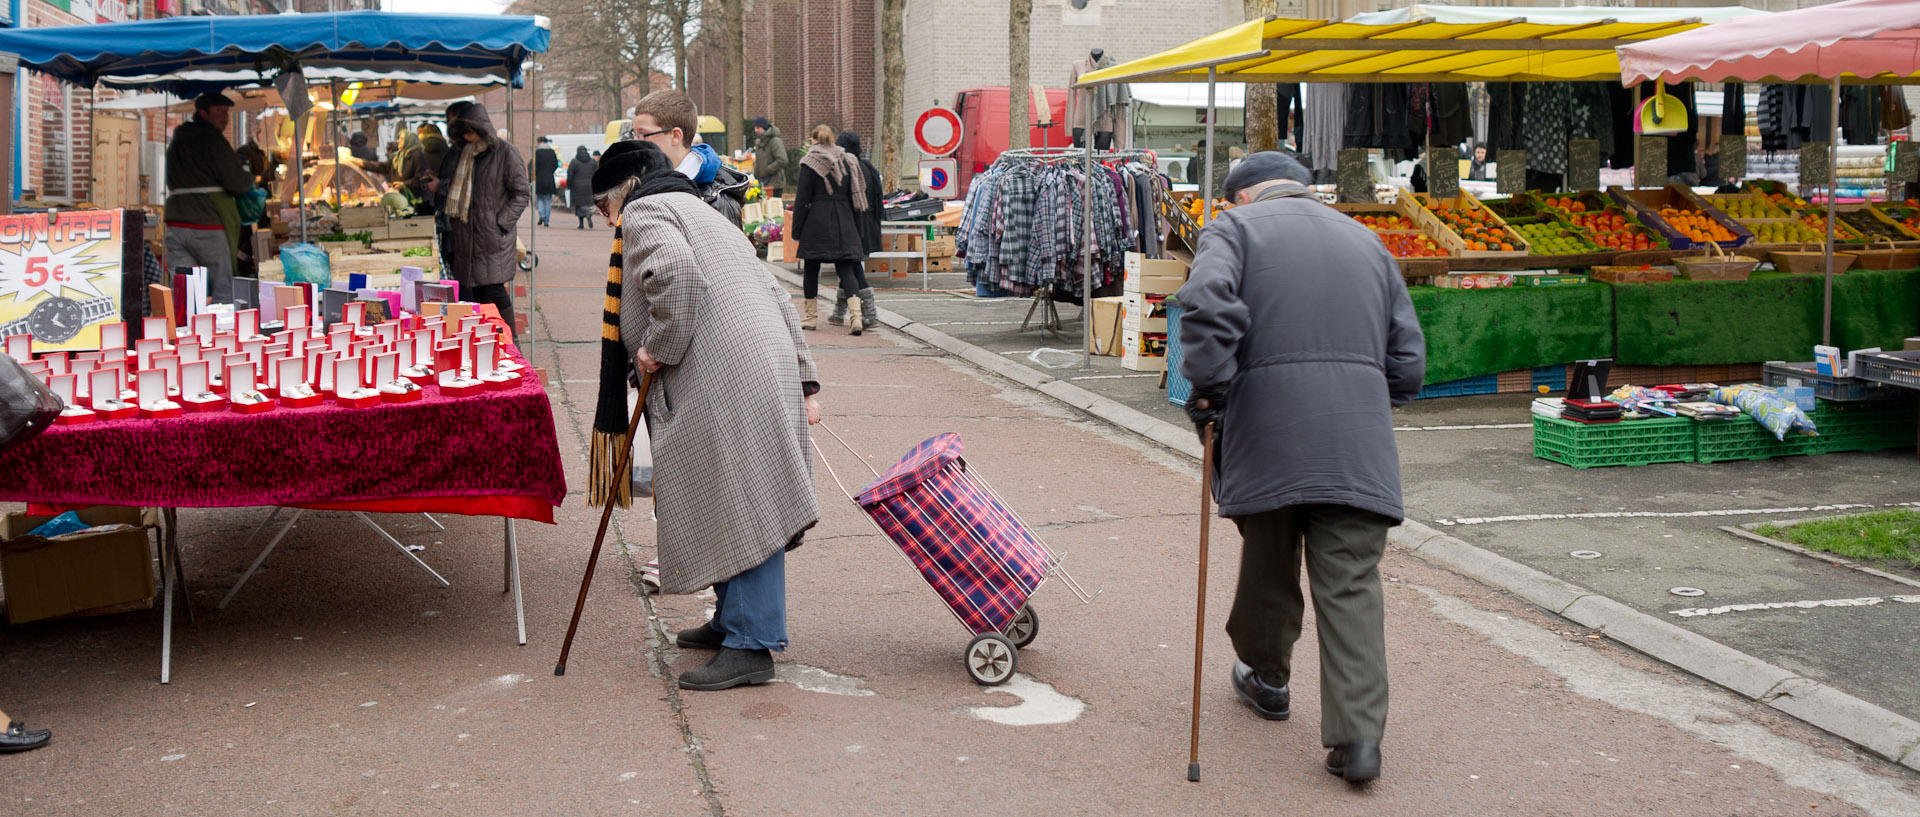 Personnes âgées avec leur canne, au marché Saint-Pierre, place la la Liberté, à Croix.